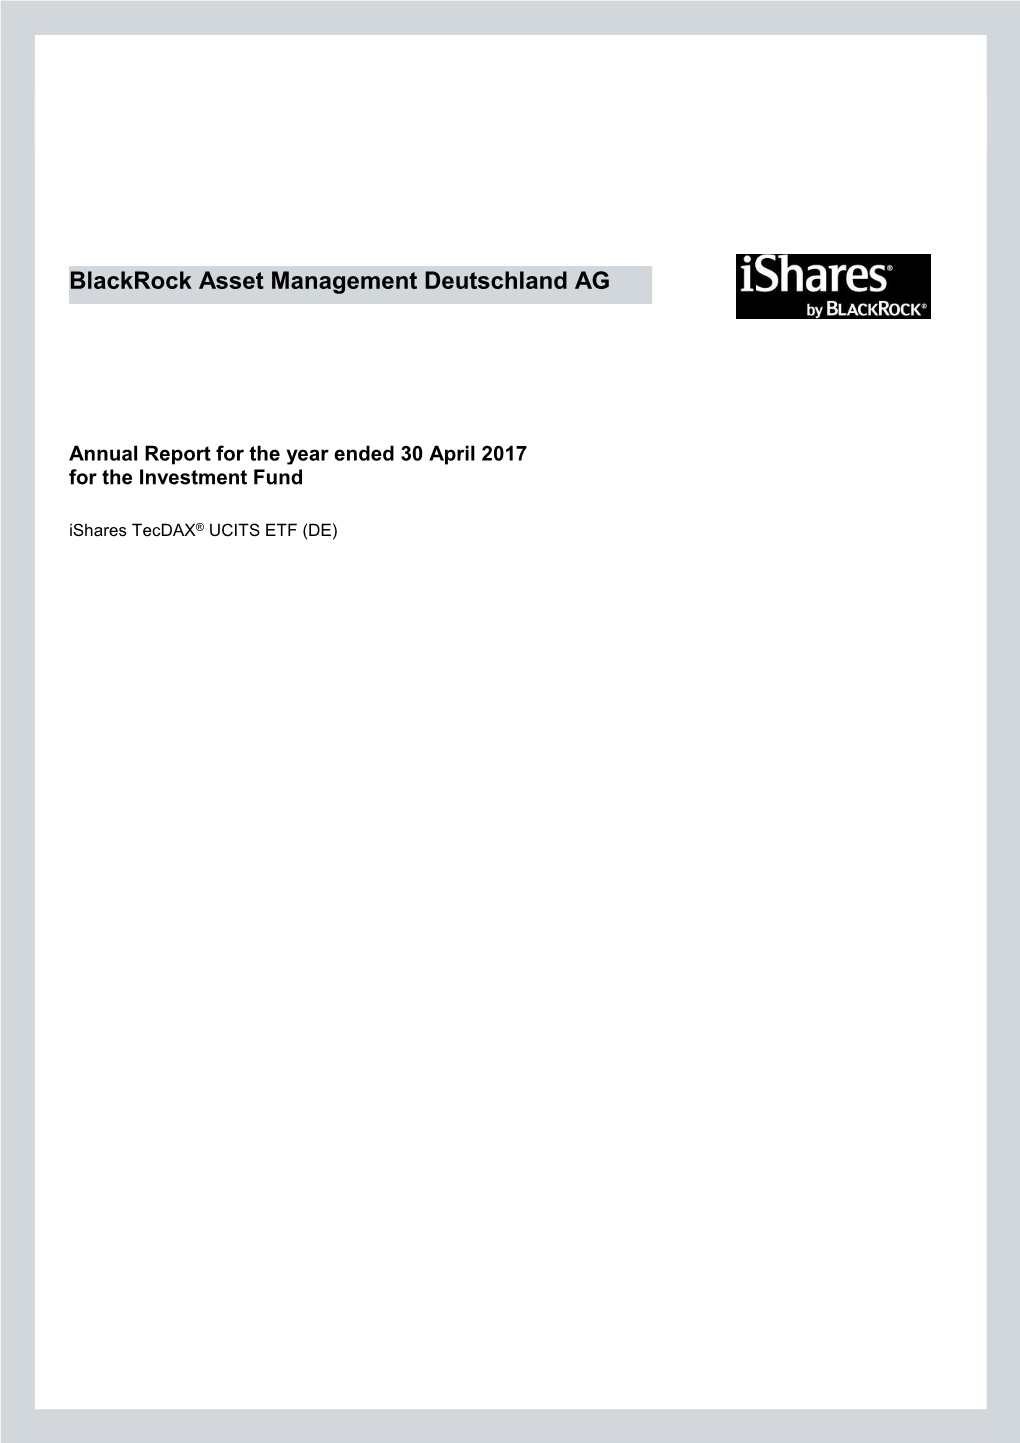 Ishares Tecdax® UCITS ETF (DE)